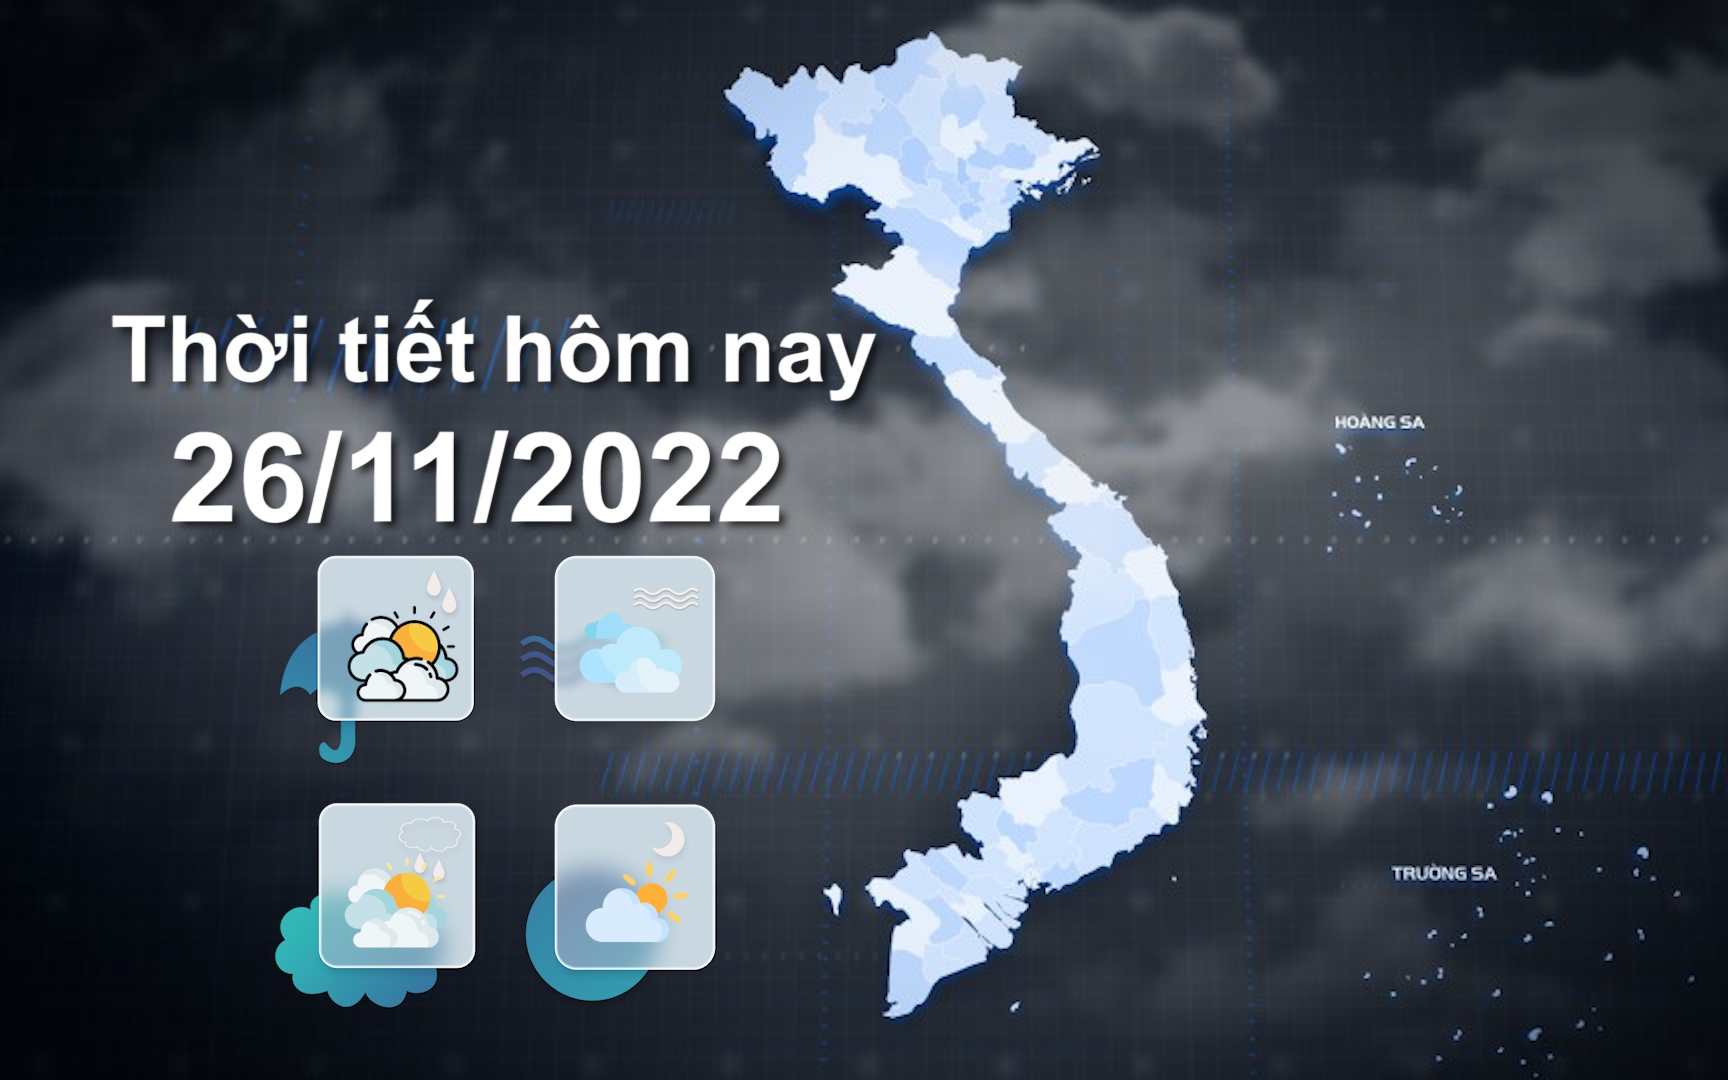 Thời tiết hôm nay 26/11/2022: Hà Nội sáng sớm trời lạnh, có mưa rào